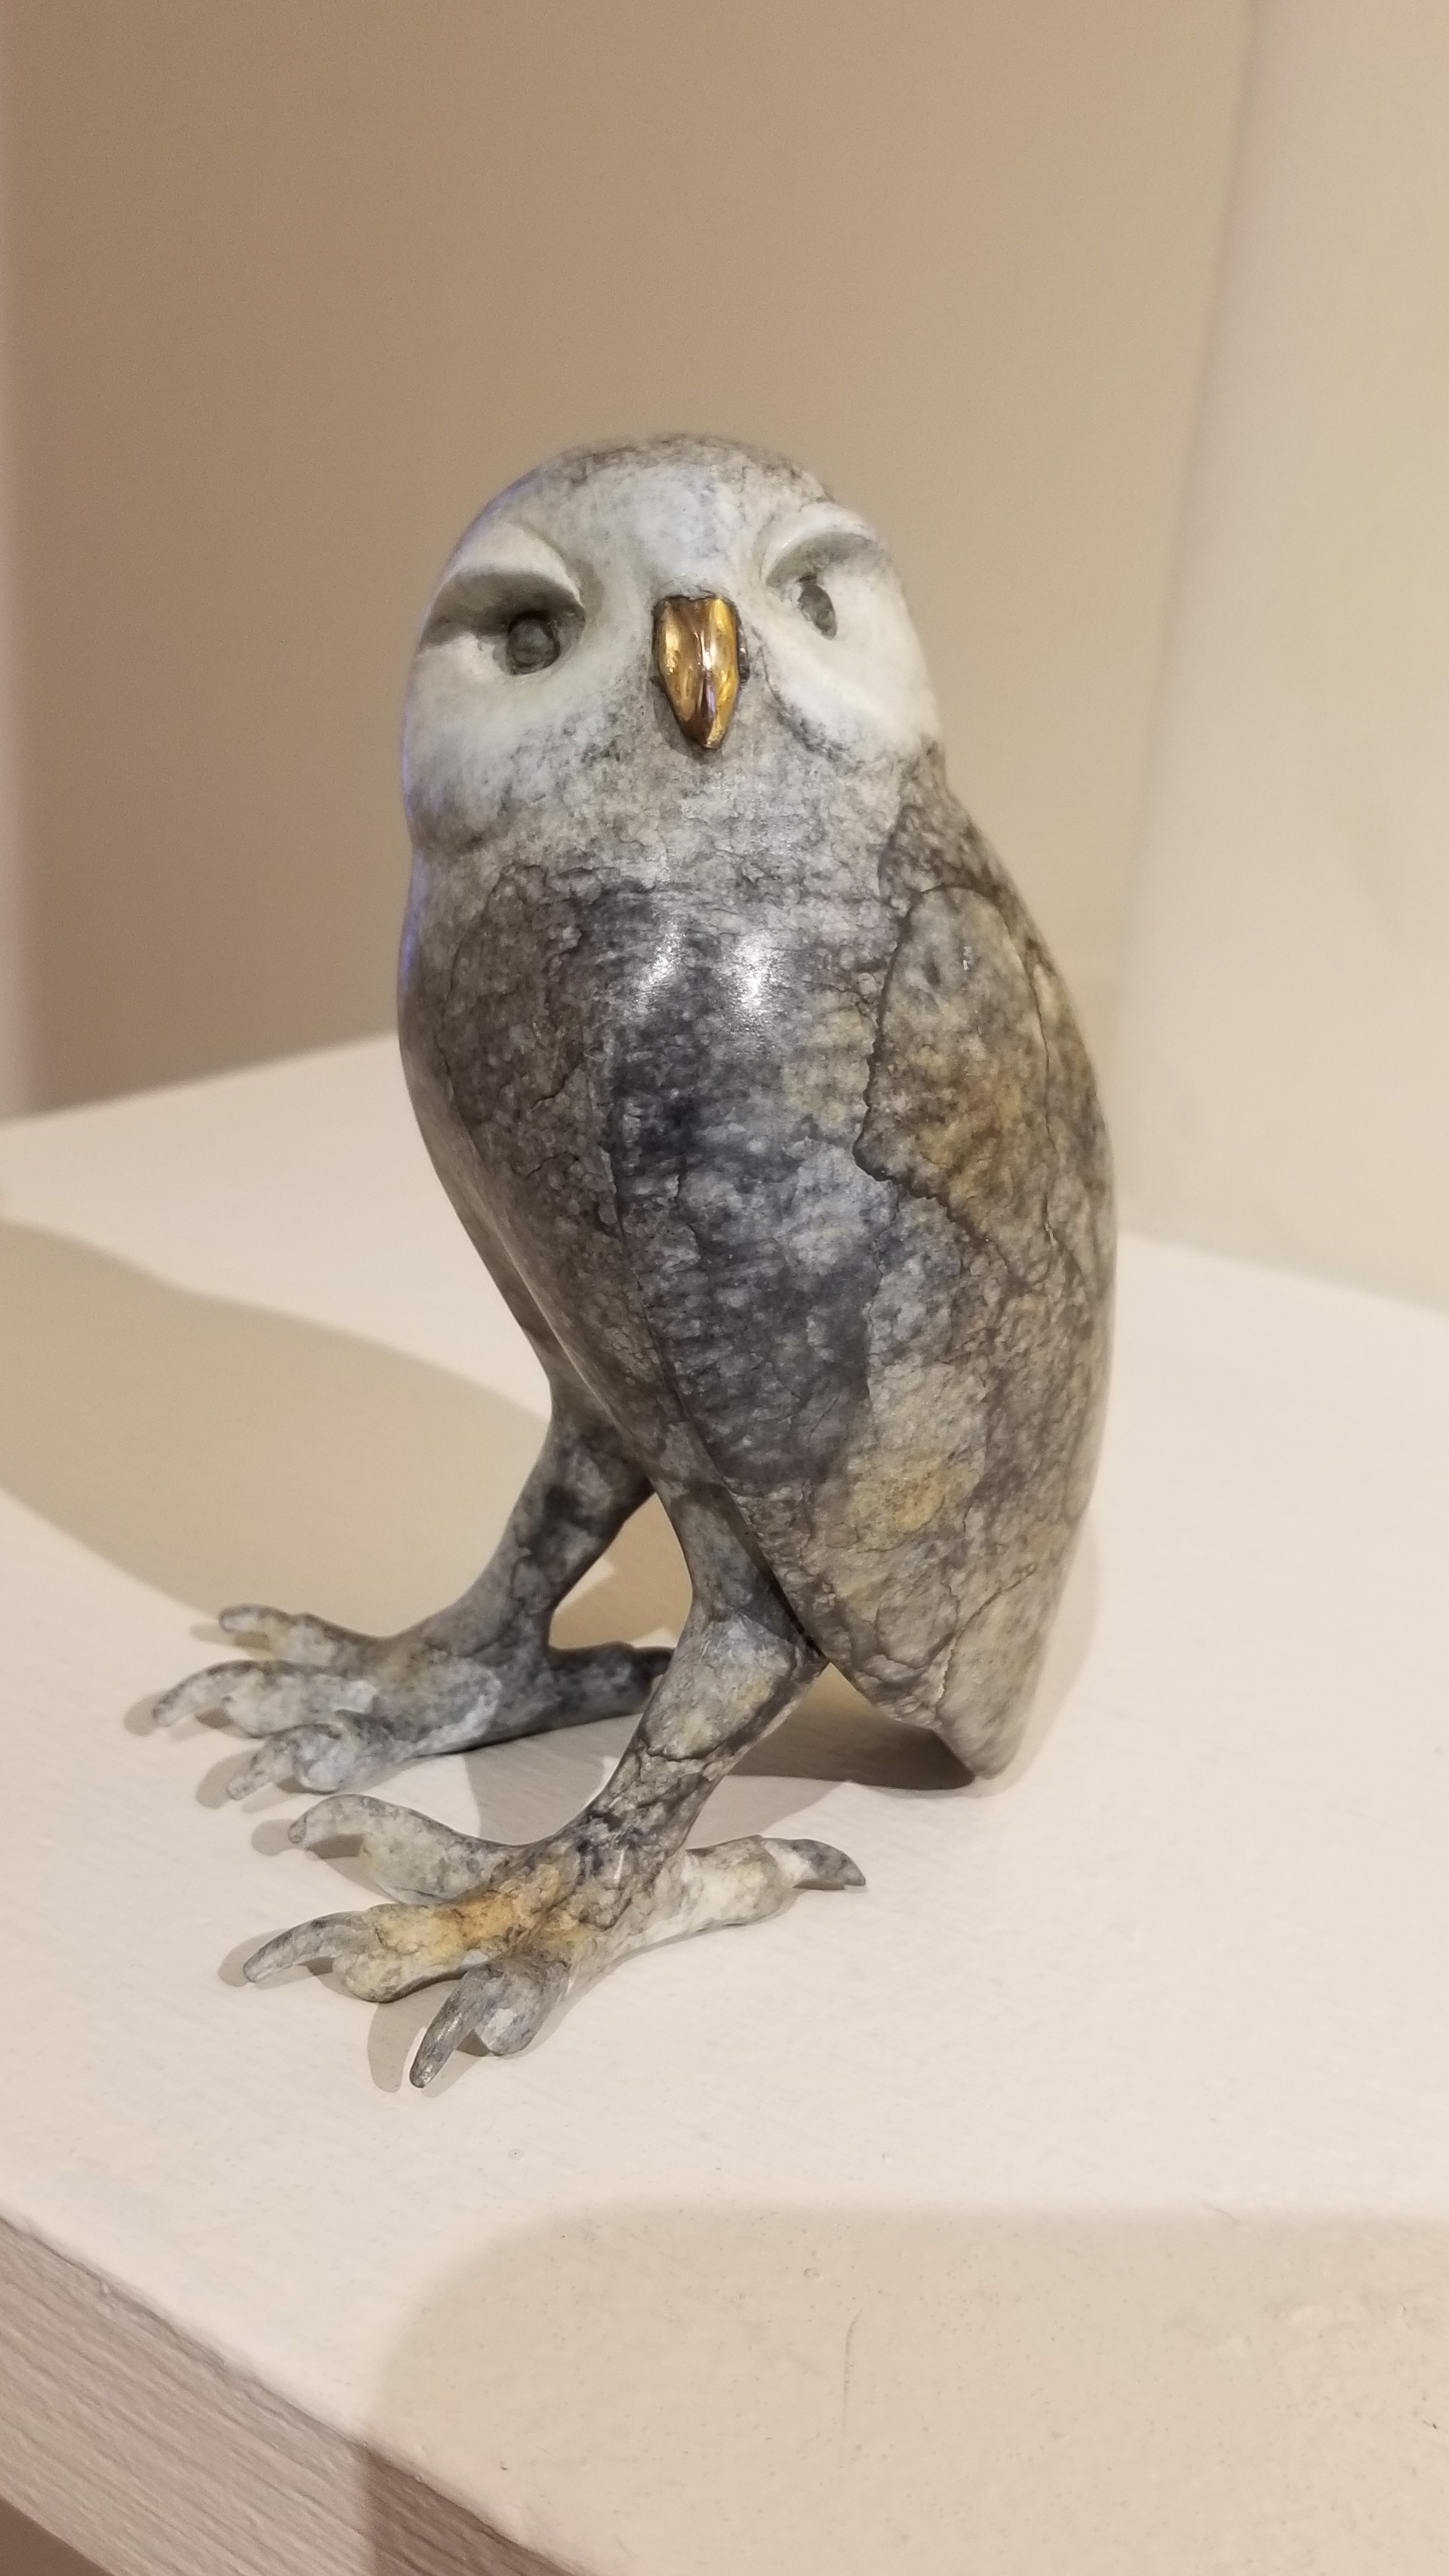 Barred Owl by Brian Arthur